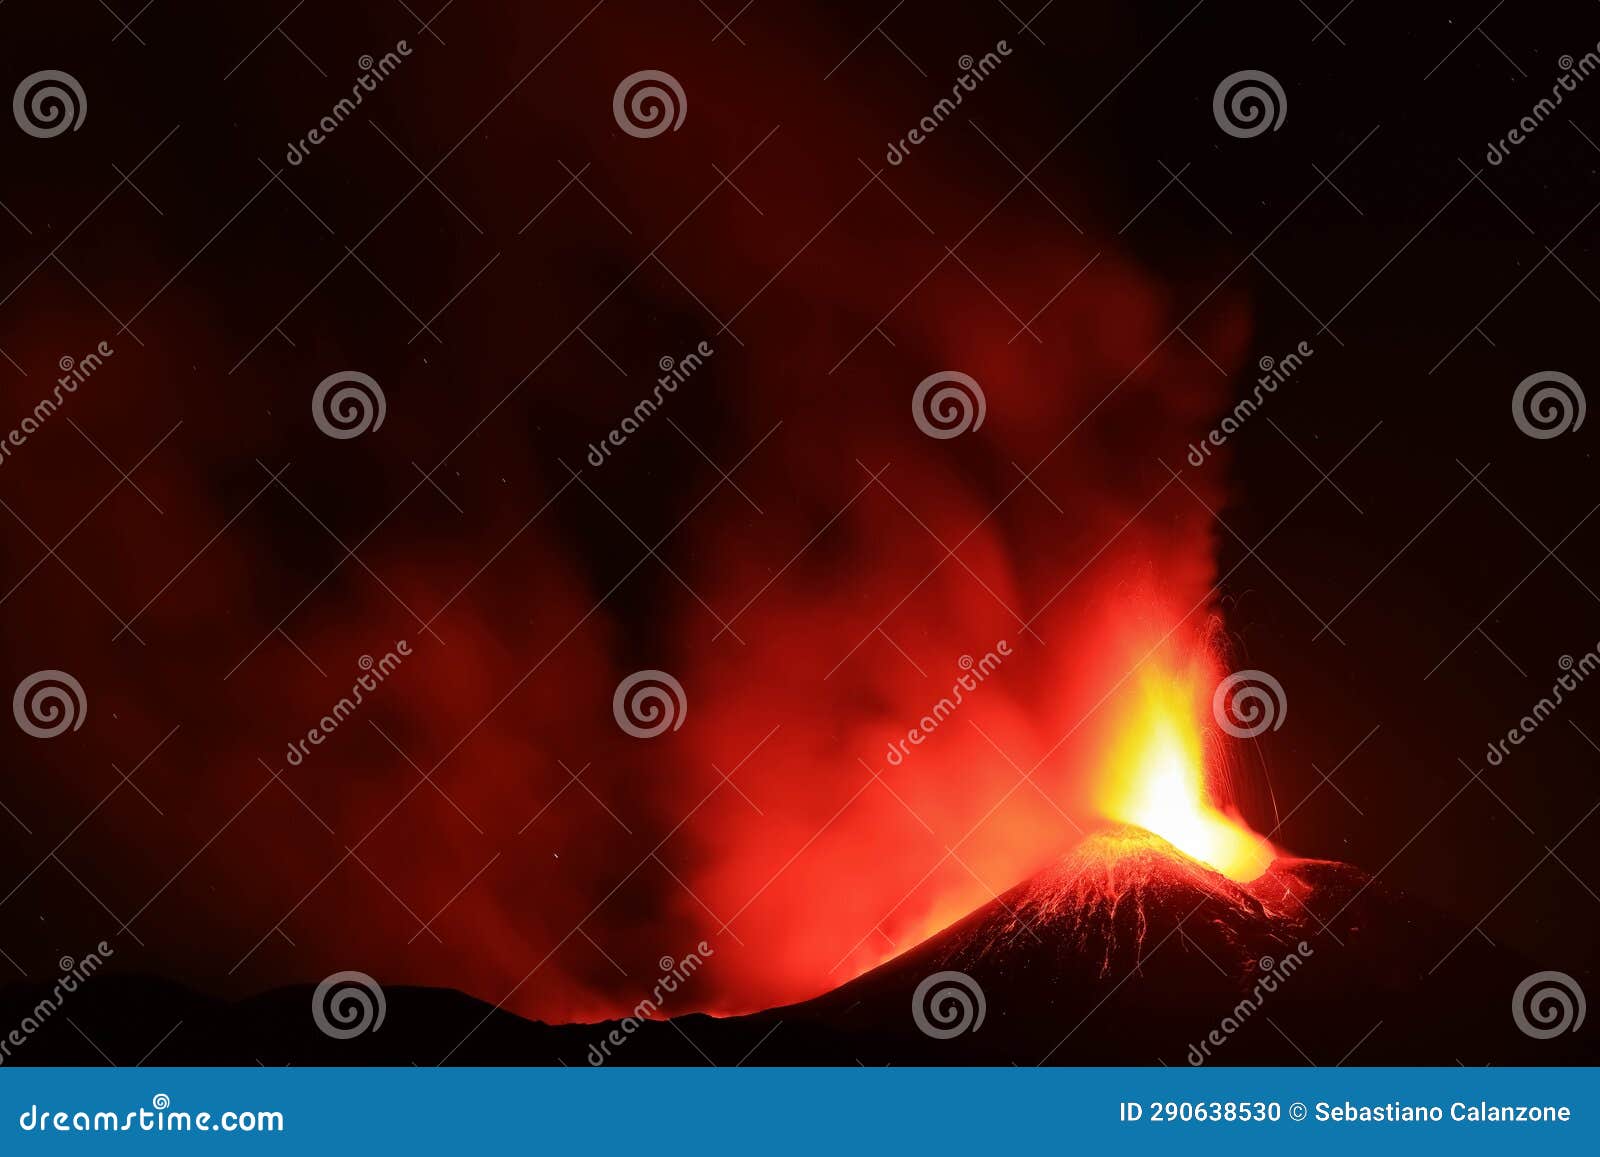 vulcano etna durante un eruzione con esplosione di lava dal cratere